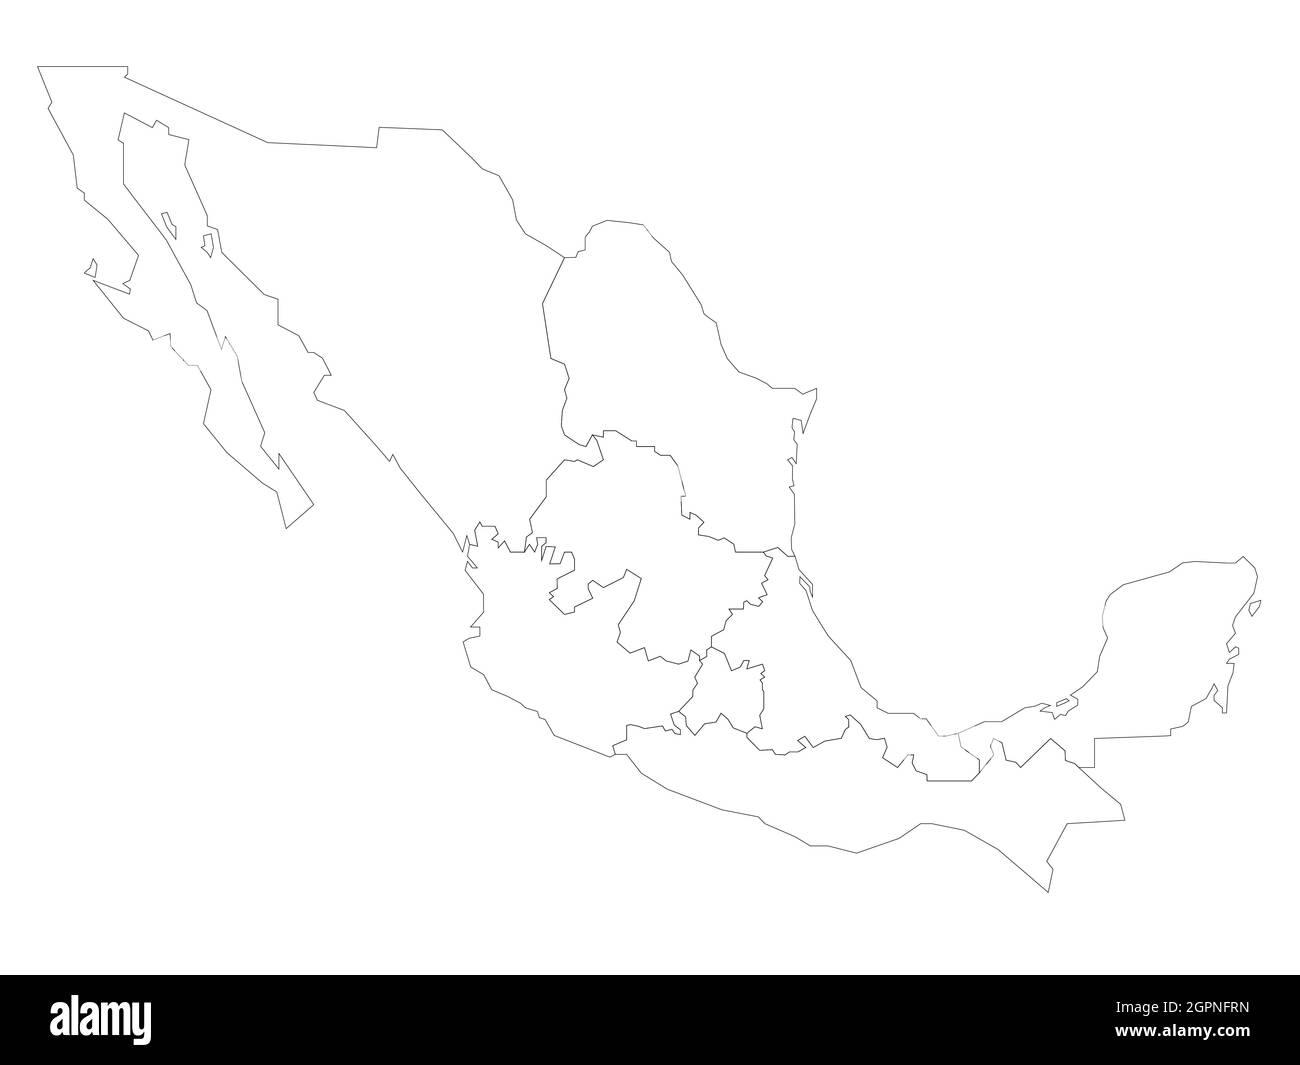 Mappa politica del Messico. Divisioni amministrative - regioni. Semplice mappa vettoriale a contorno nero vuota piatta. Illustrazione Vettoriale